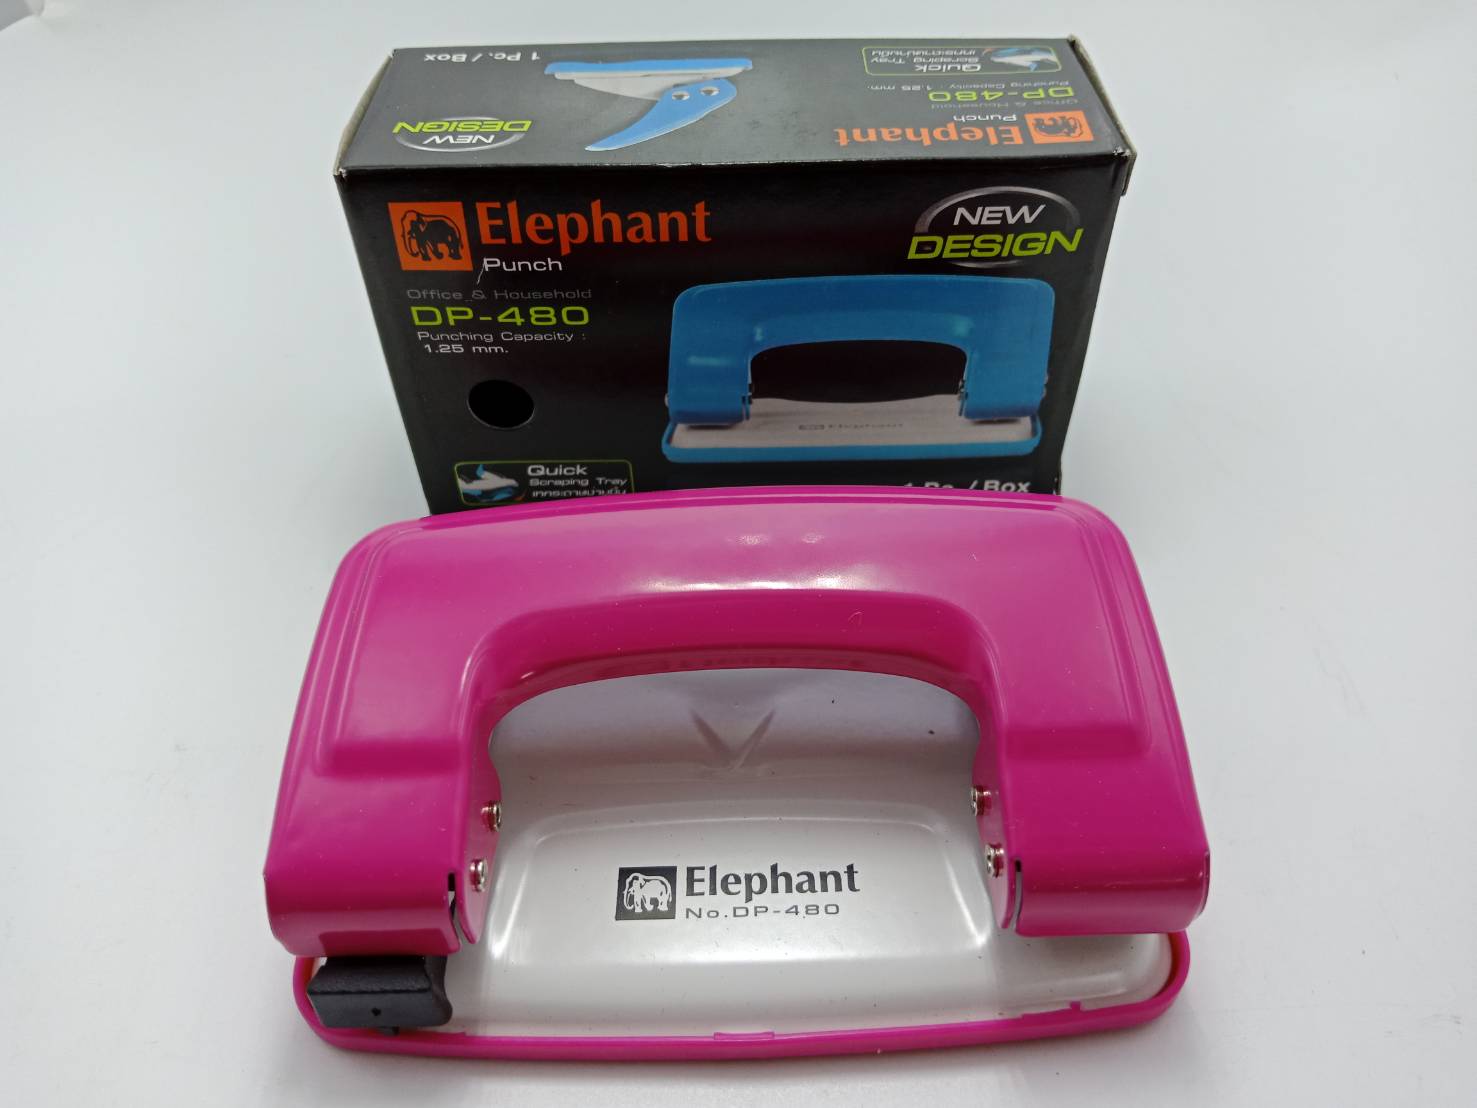 ที่เจาะกระดาษ Elephant DP-480 เจาะกระดาษได้ 1.25 mm. คละสี